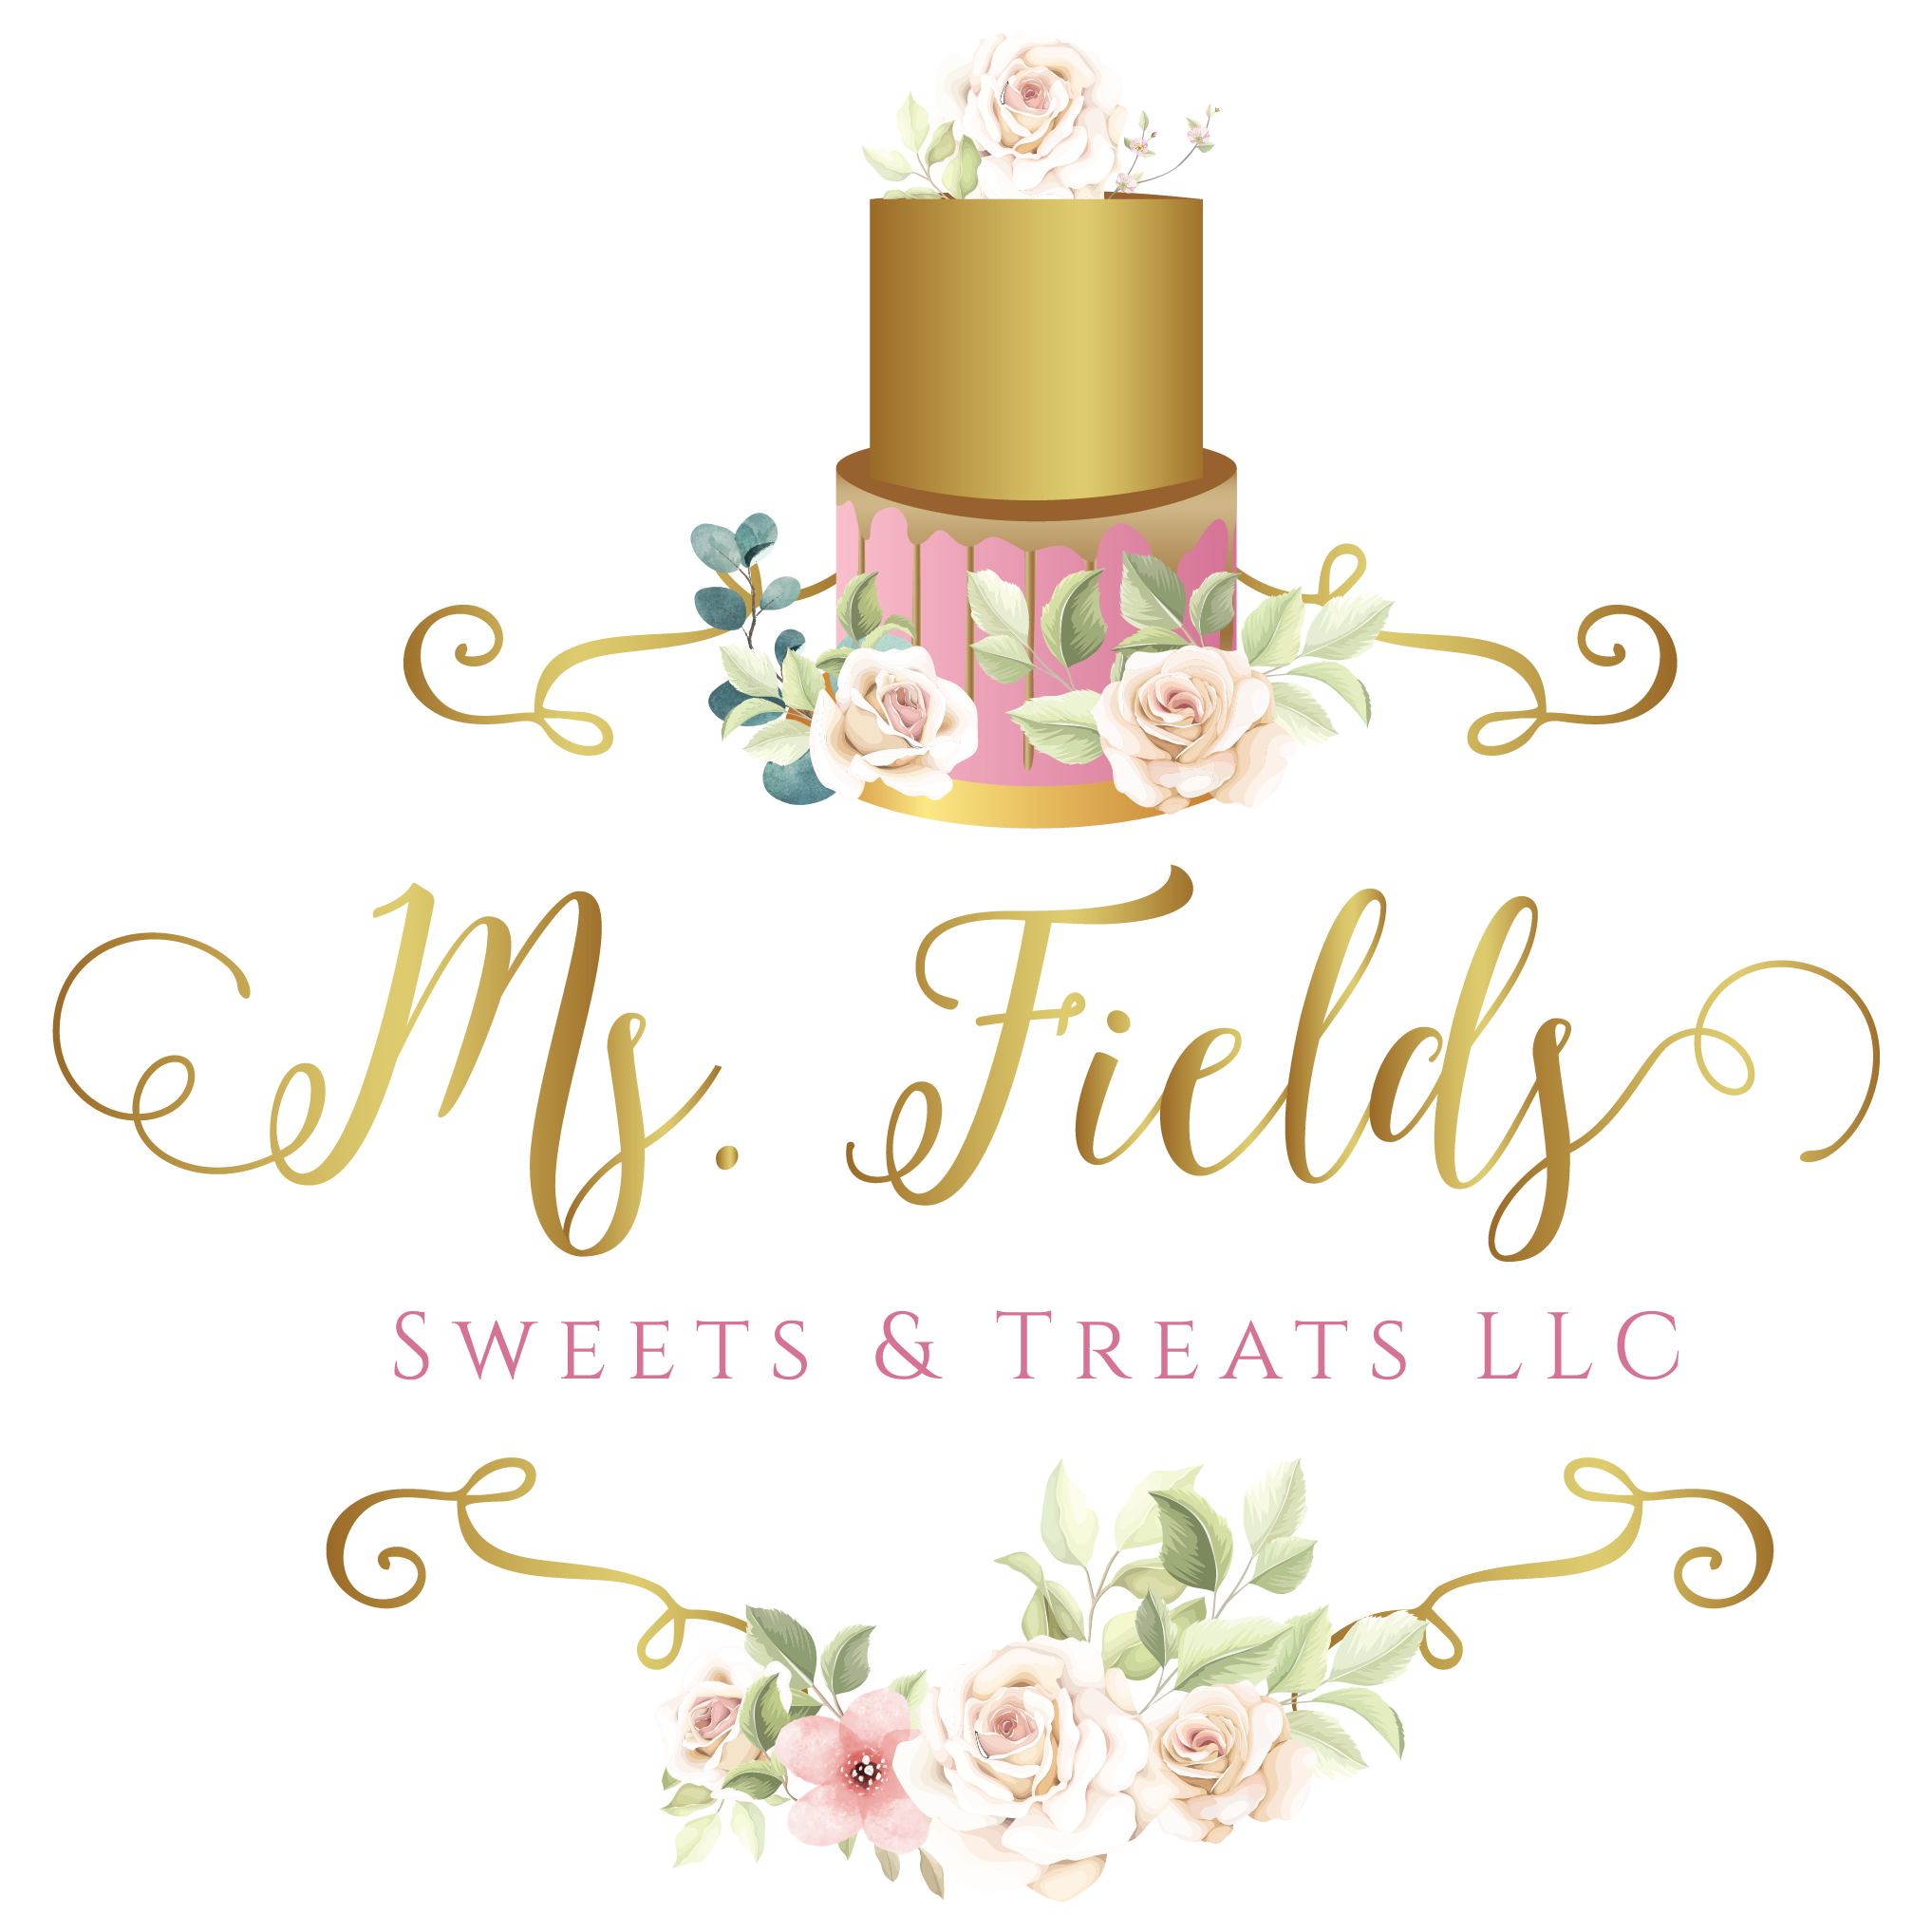 Ms. Fields Sweets & Treats, LLC.